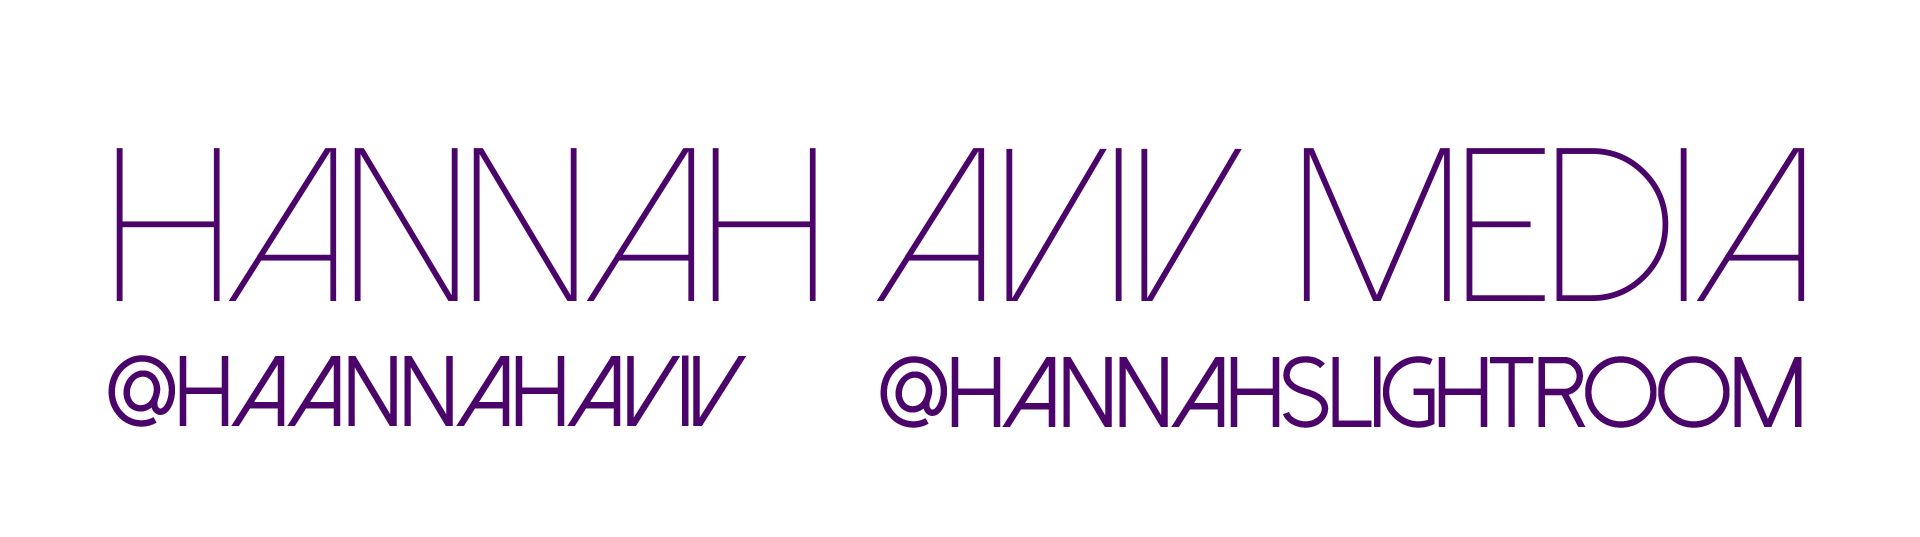 Hannah Aviv